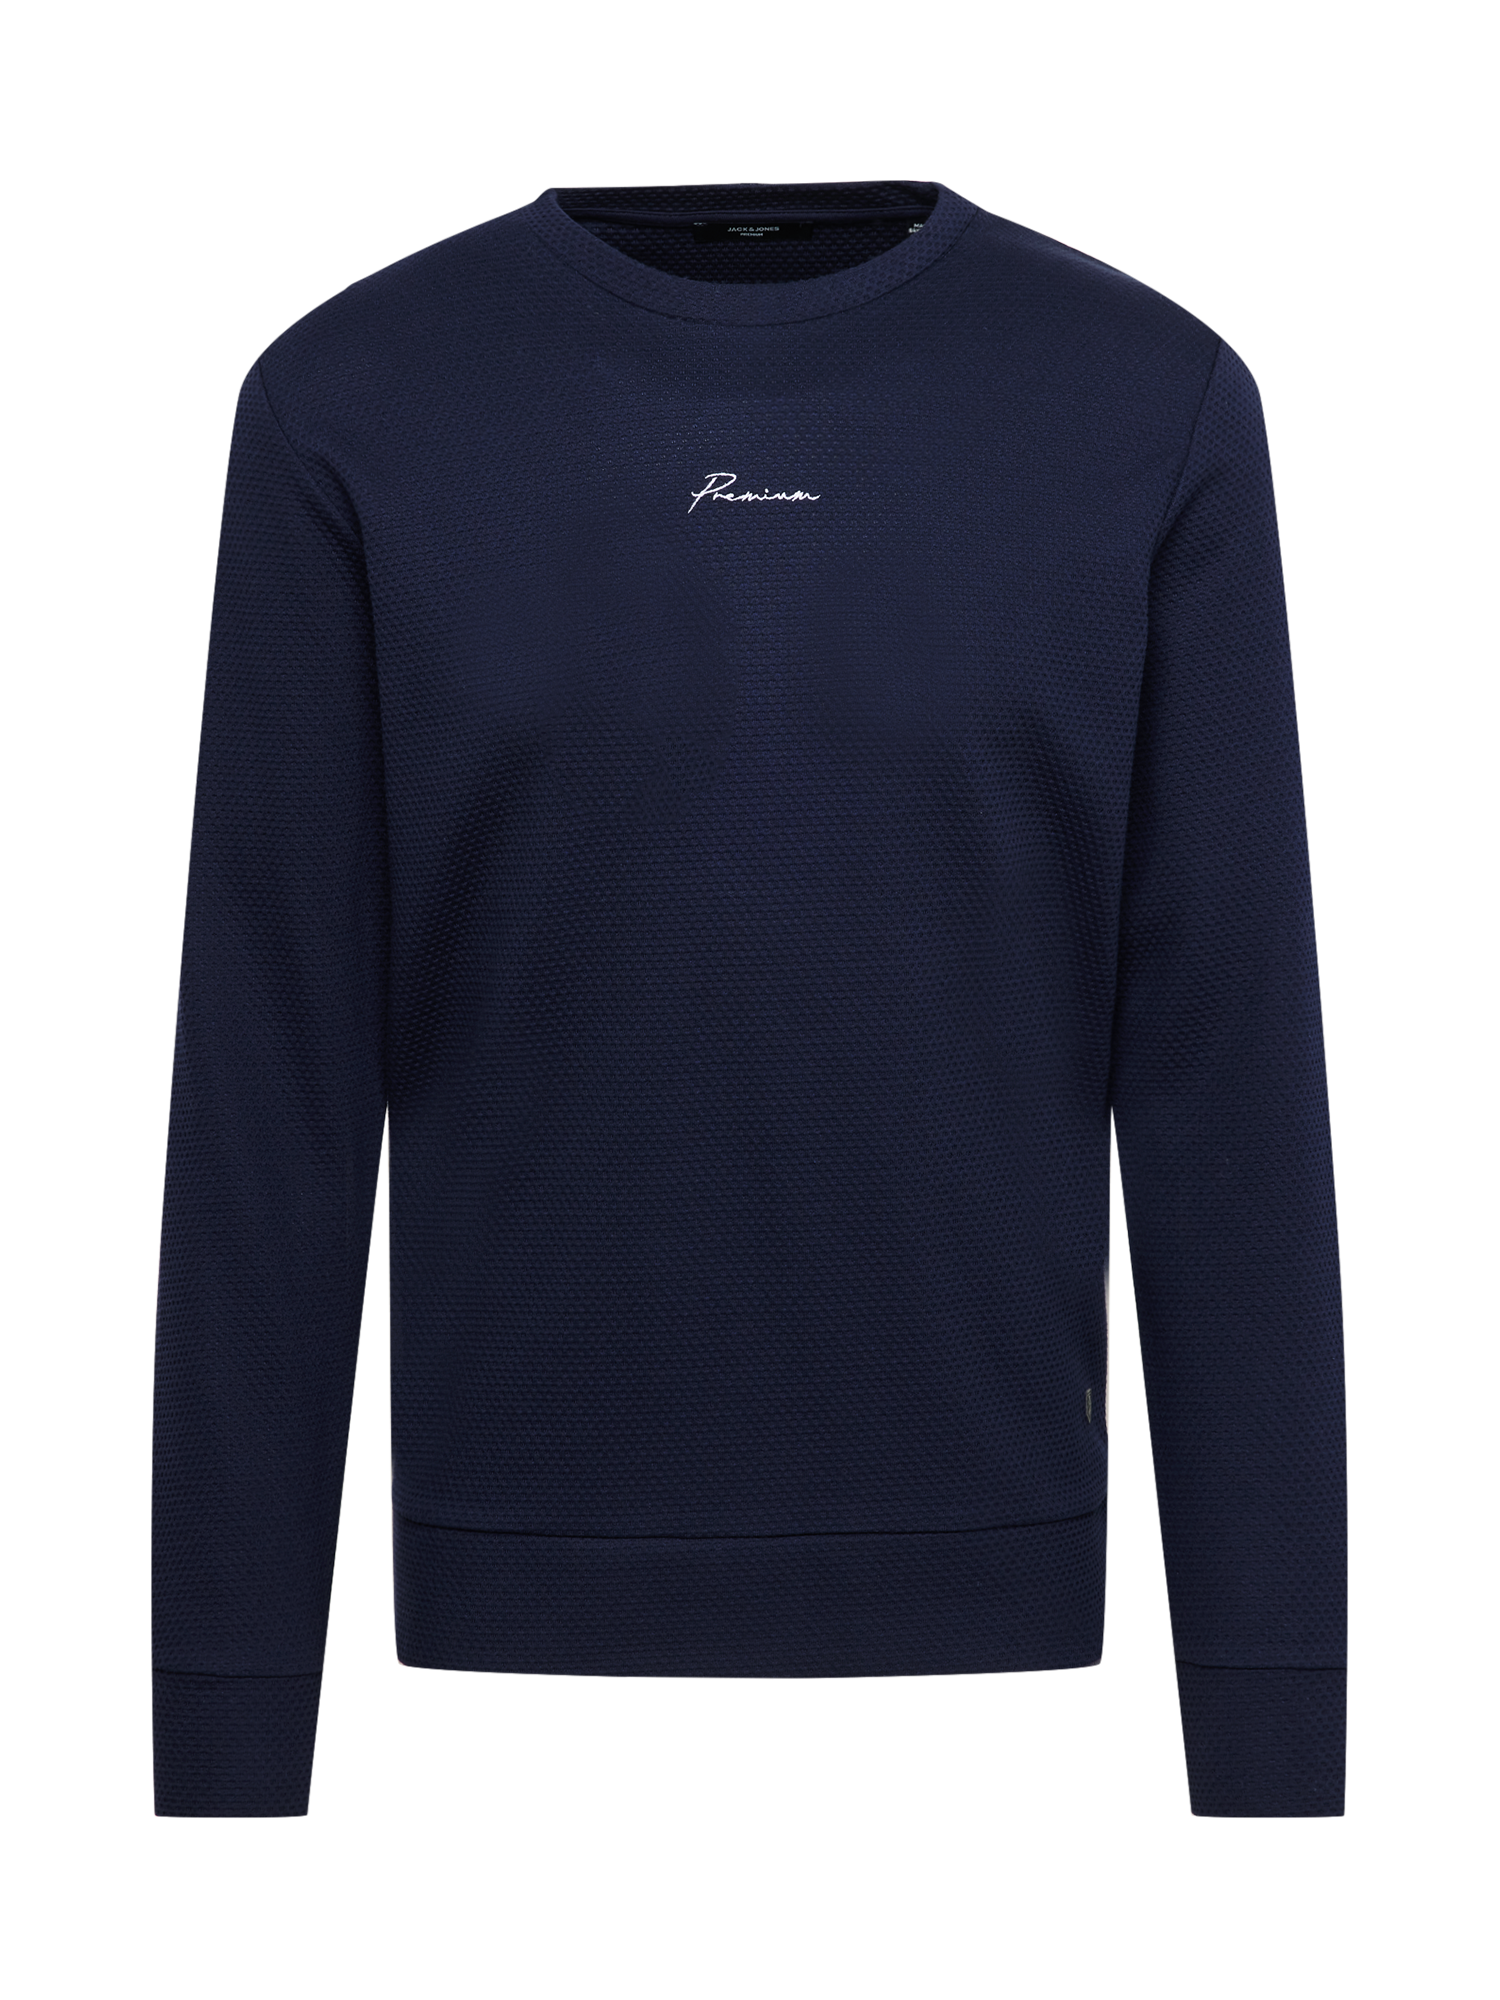 IVhvS Bluzy JACK & JONES Bluzka sportowa w kolorze Granatowym 